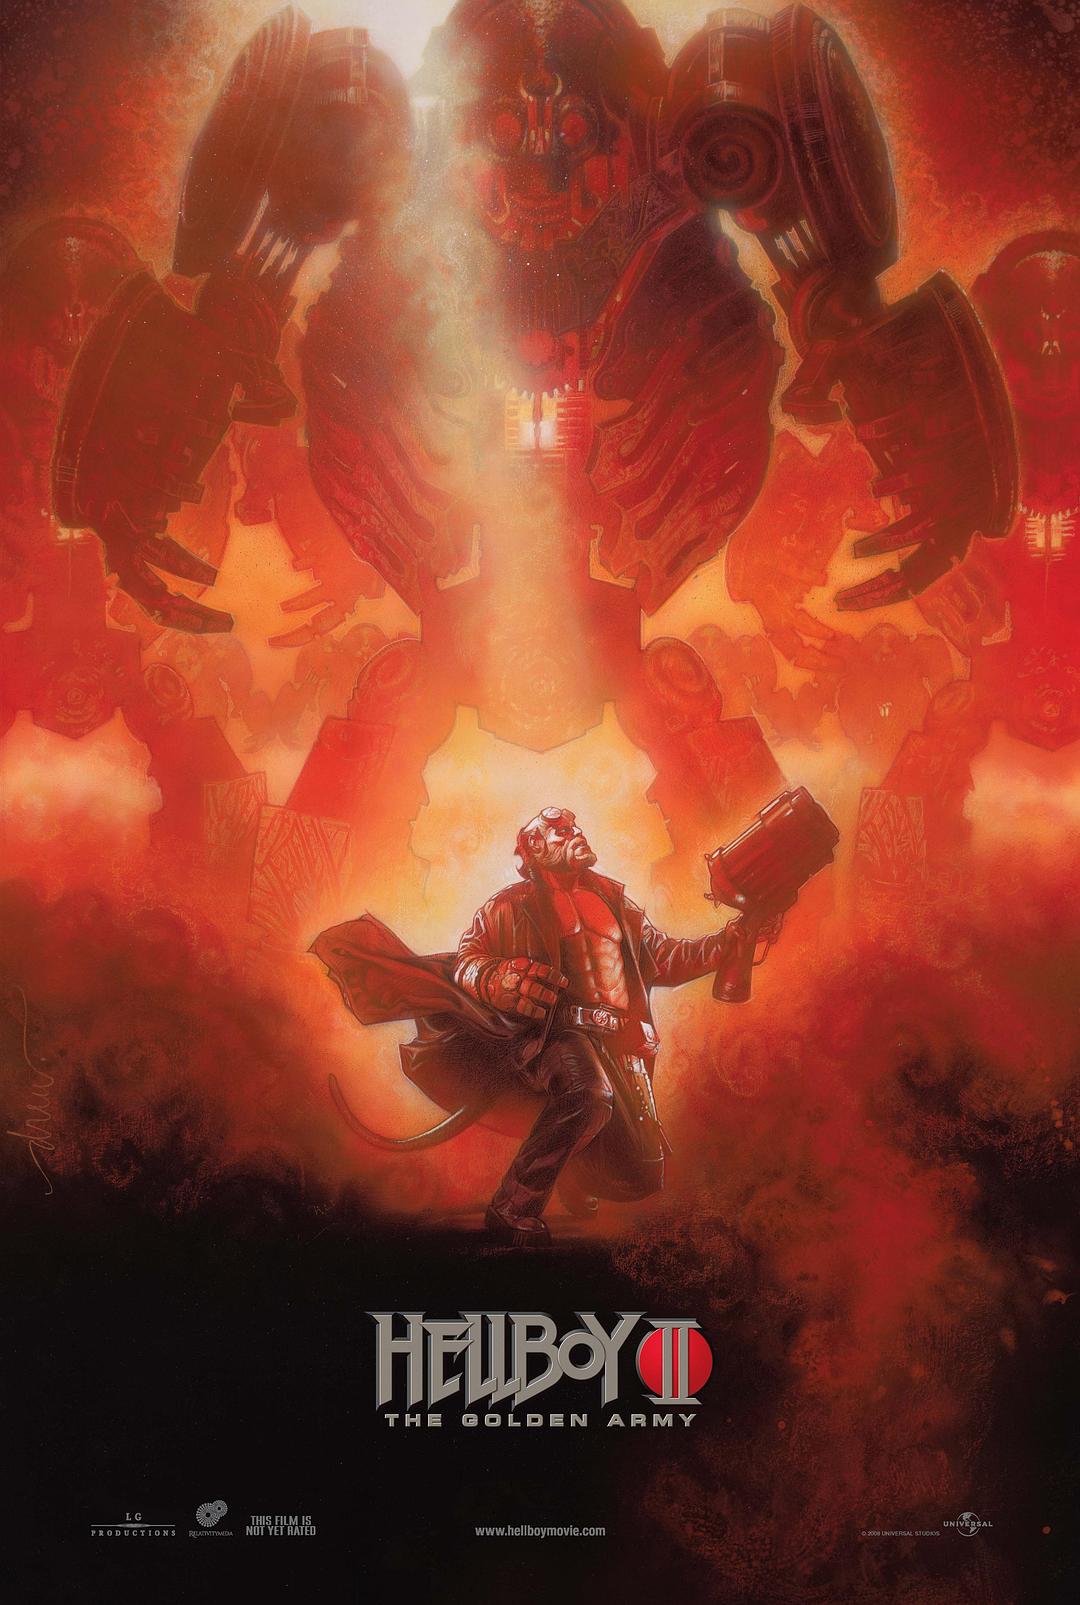 天堂男爵2:黄金军团/天堂怪客2:金甲军团 Hellboy.II.The.Golden.Army.2008.2160p.BluRay.x264.8bit.SDR.DTS-X.7.1-SWTYBLZ 40.59GB-1.png